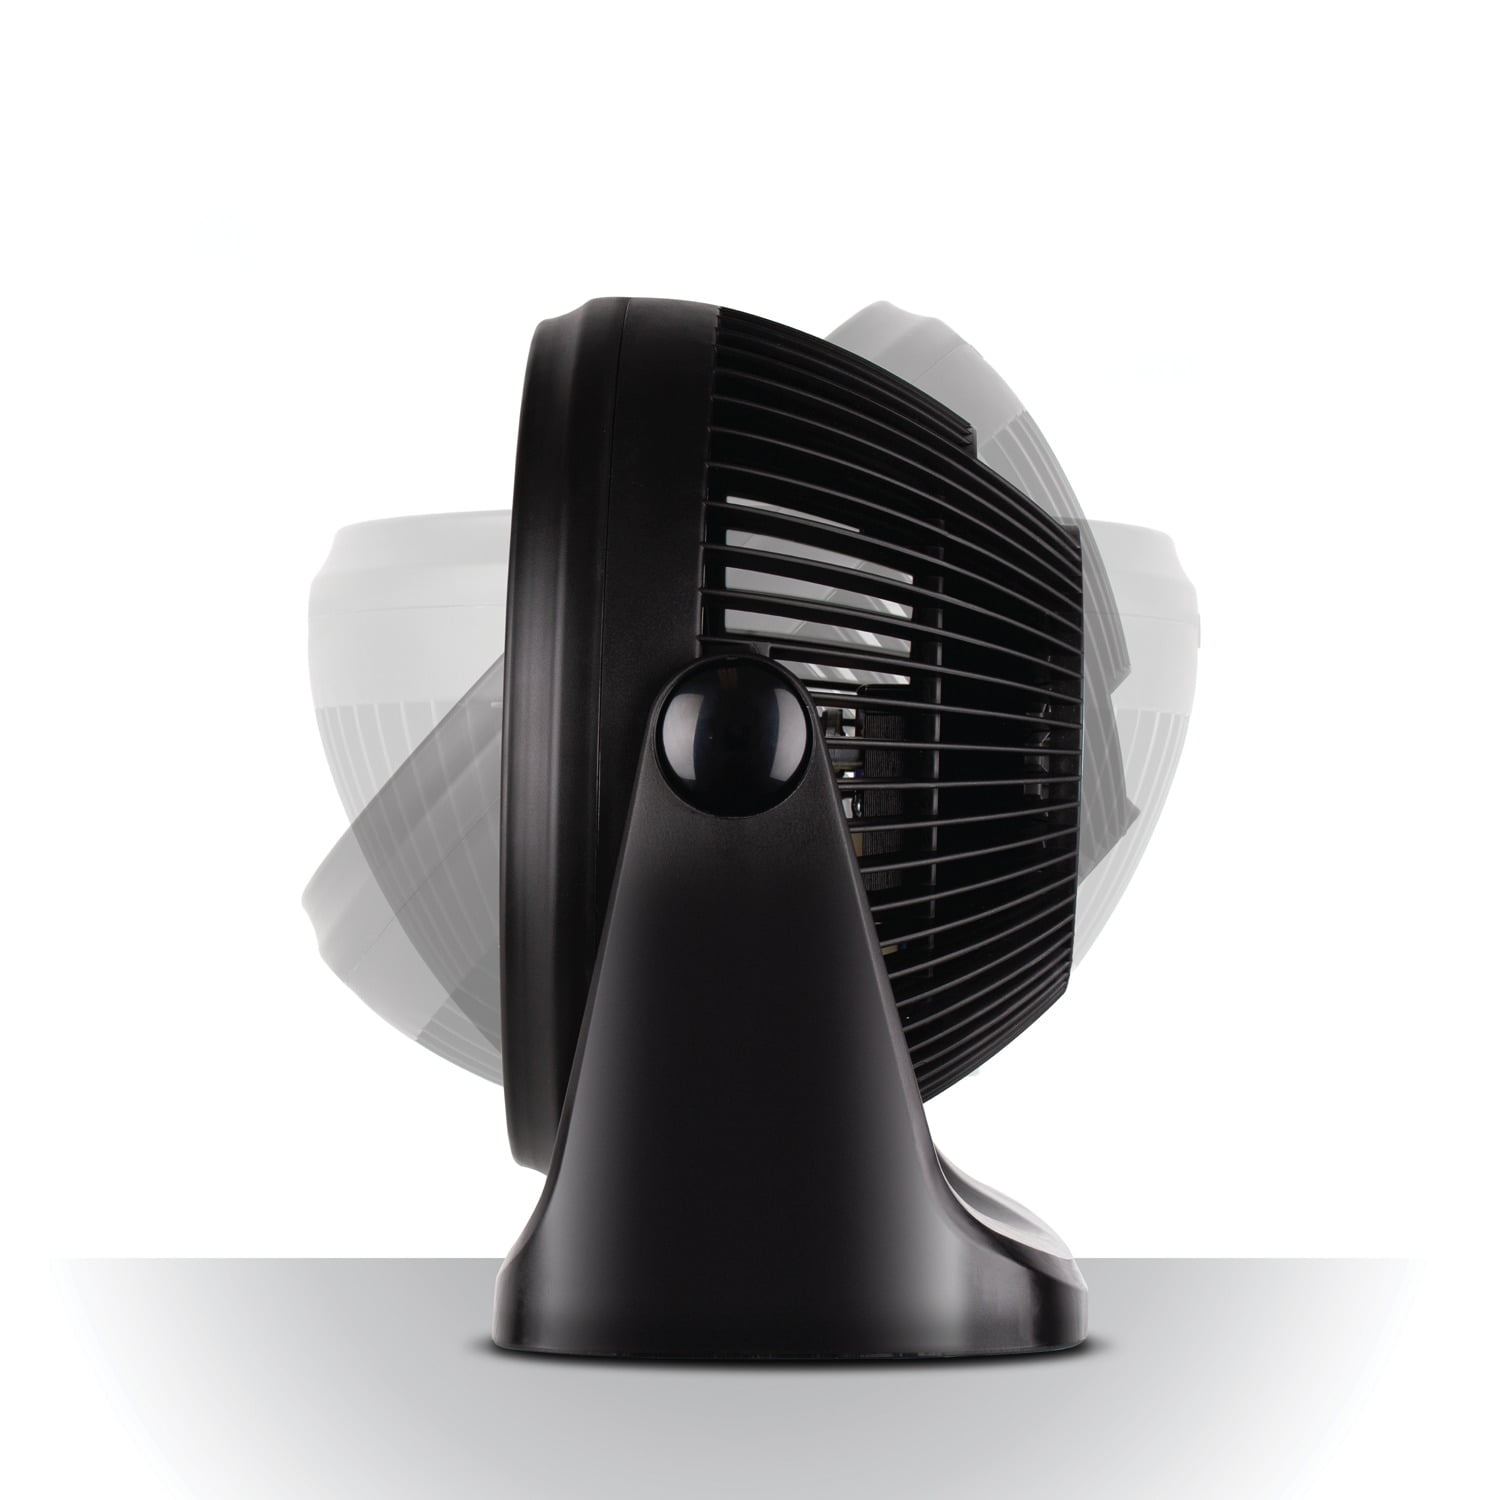 BLACK+DECKER 7-in 3-Speed Indoor Black Desk Fan in the Portable